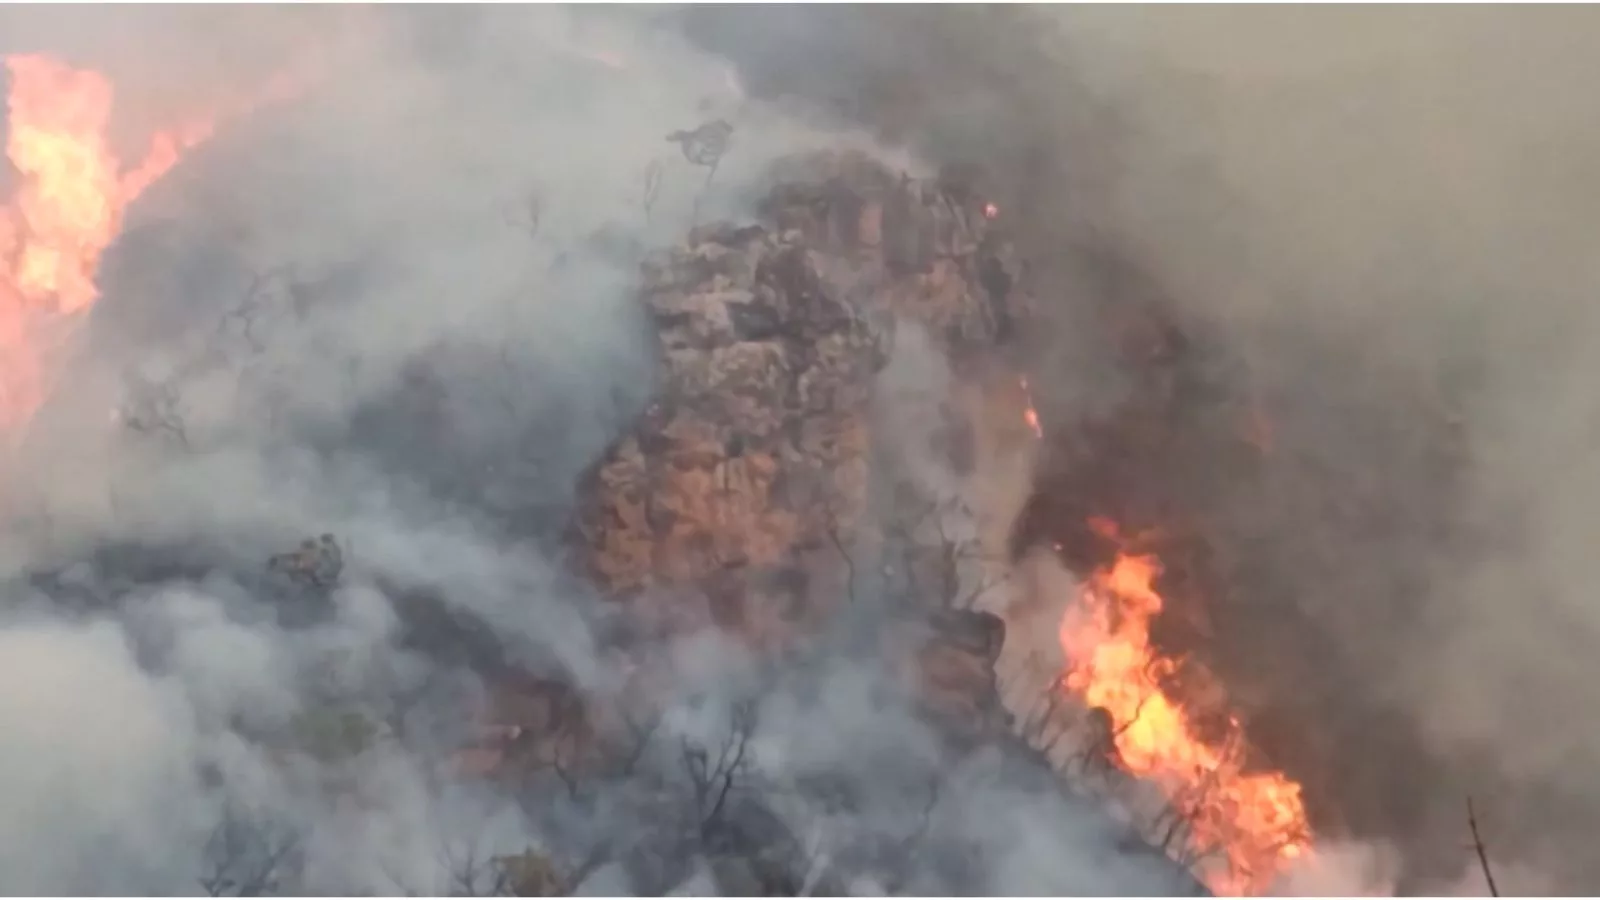 Famasul repudia declarações sobre propagação do fogo no Pantanal